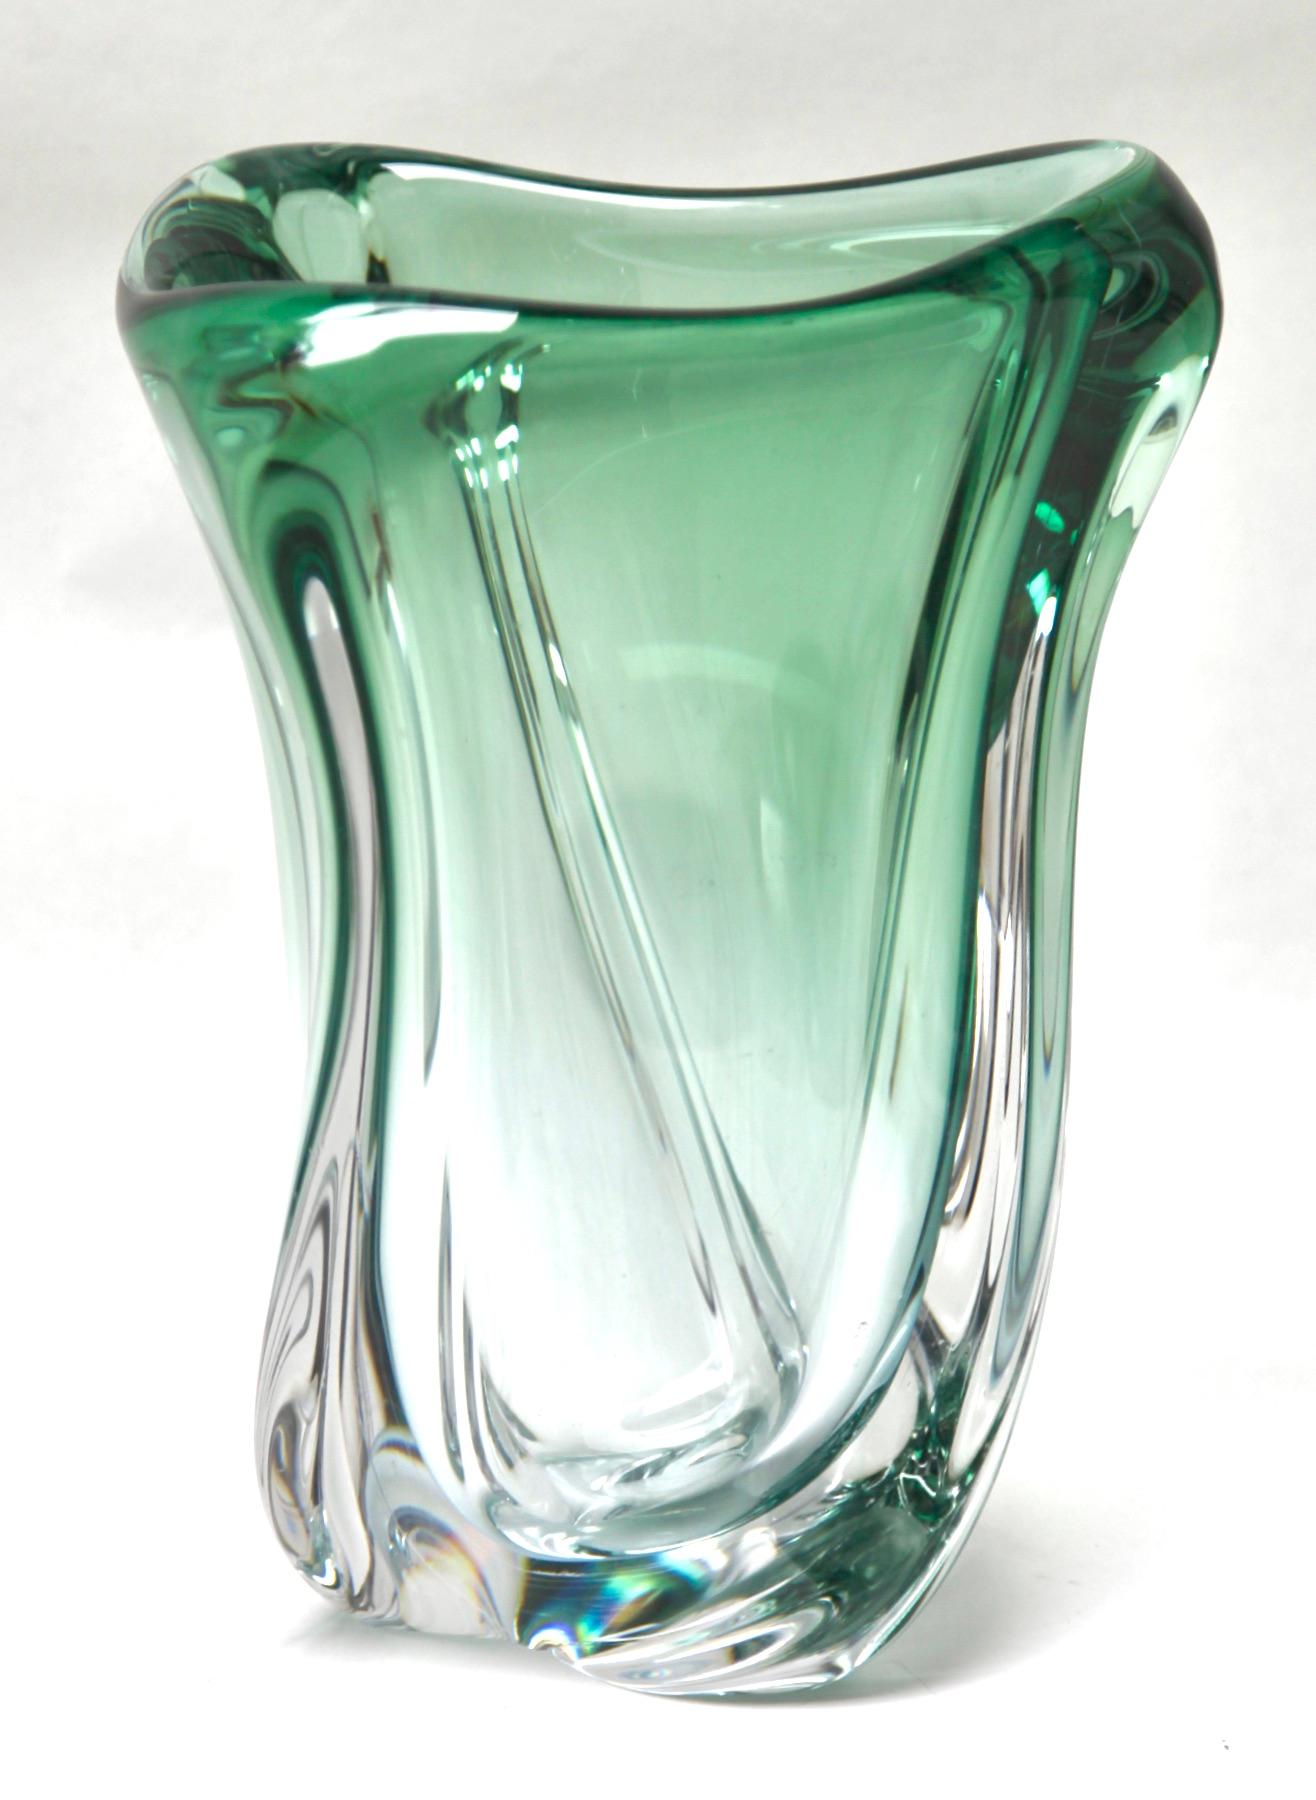 Lourd vase en cristal Val Saint Lambert.
La couleur verte centrale (traditionnellement préférée de VSL) a été recouverte d'un Sommerso épais (couche transparente à l'extérieur) et sculptée avec des courbes subtiles par les maîtres artisans de la